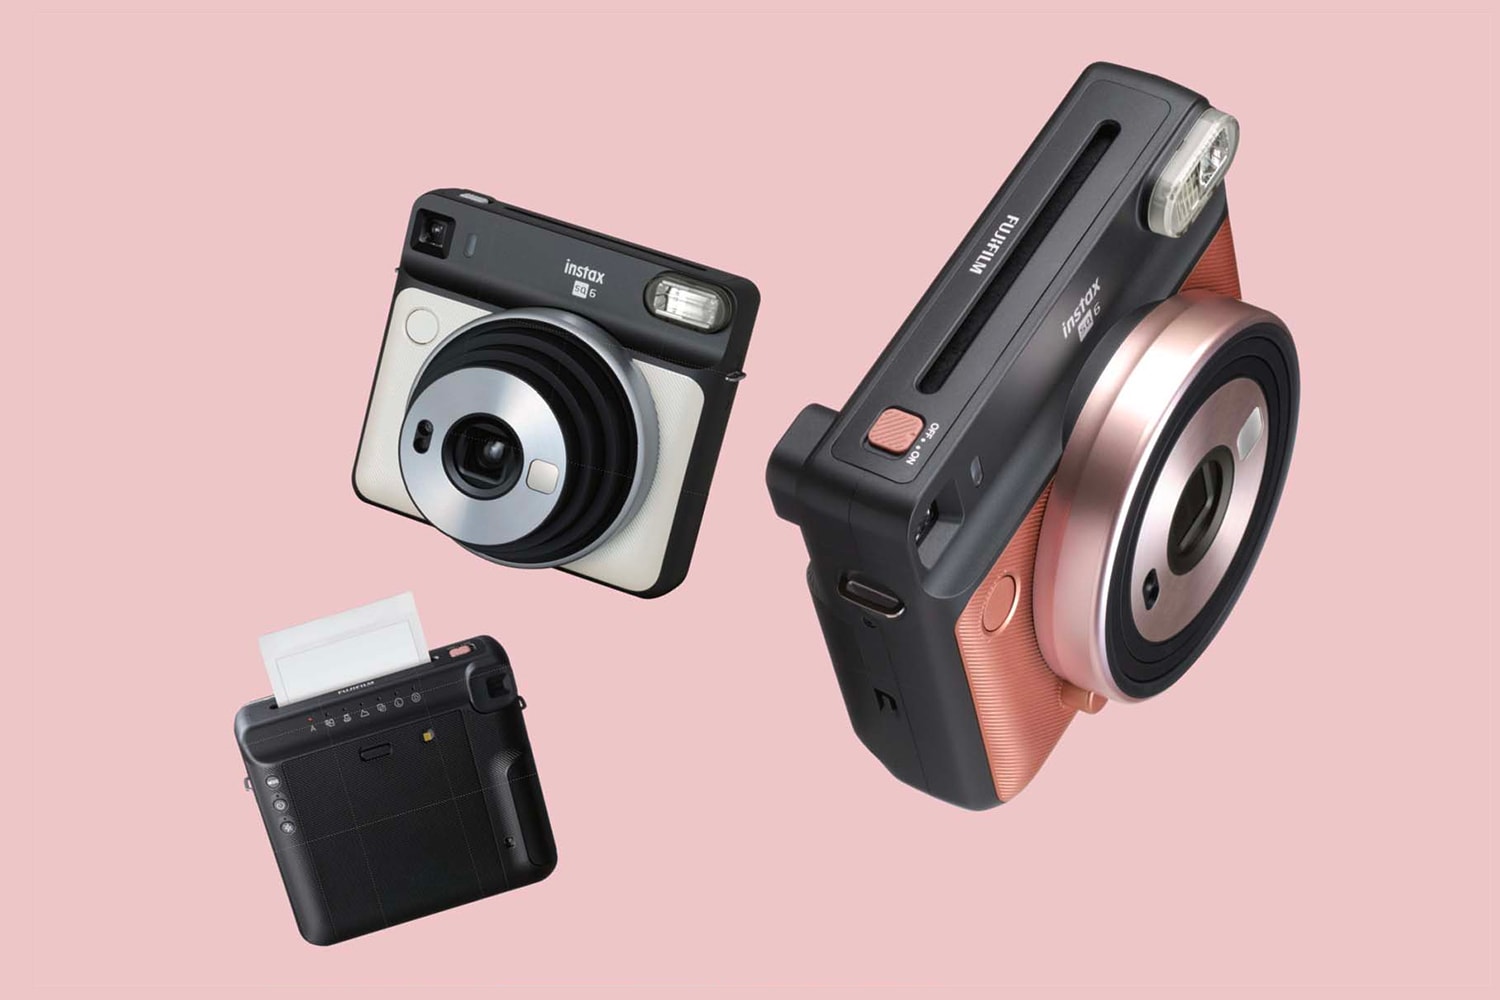 Fujifilm Instax SQUARE SQ6 Camera Blush Gold Graphite Gray Pearl White Release Date Price Instant Film Polaroid